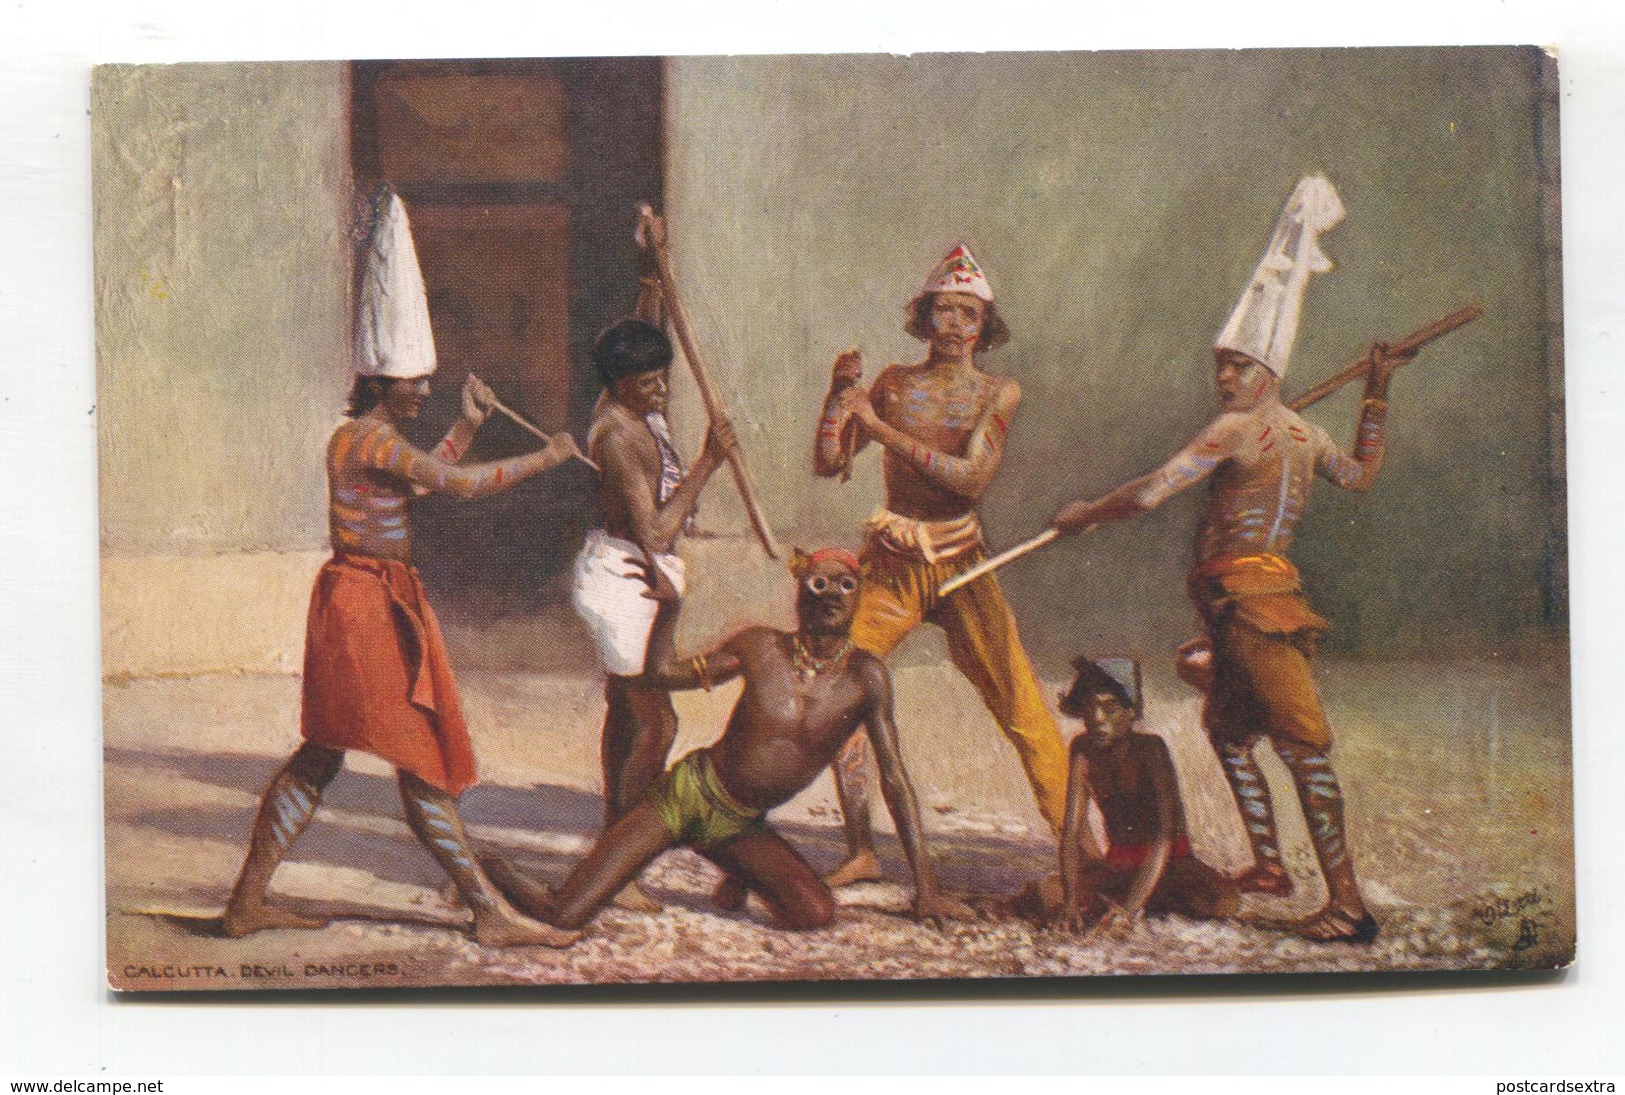 Calcutta, India - Devil Dancers - Old Tuck Postcard No. 7408 - India